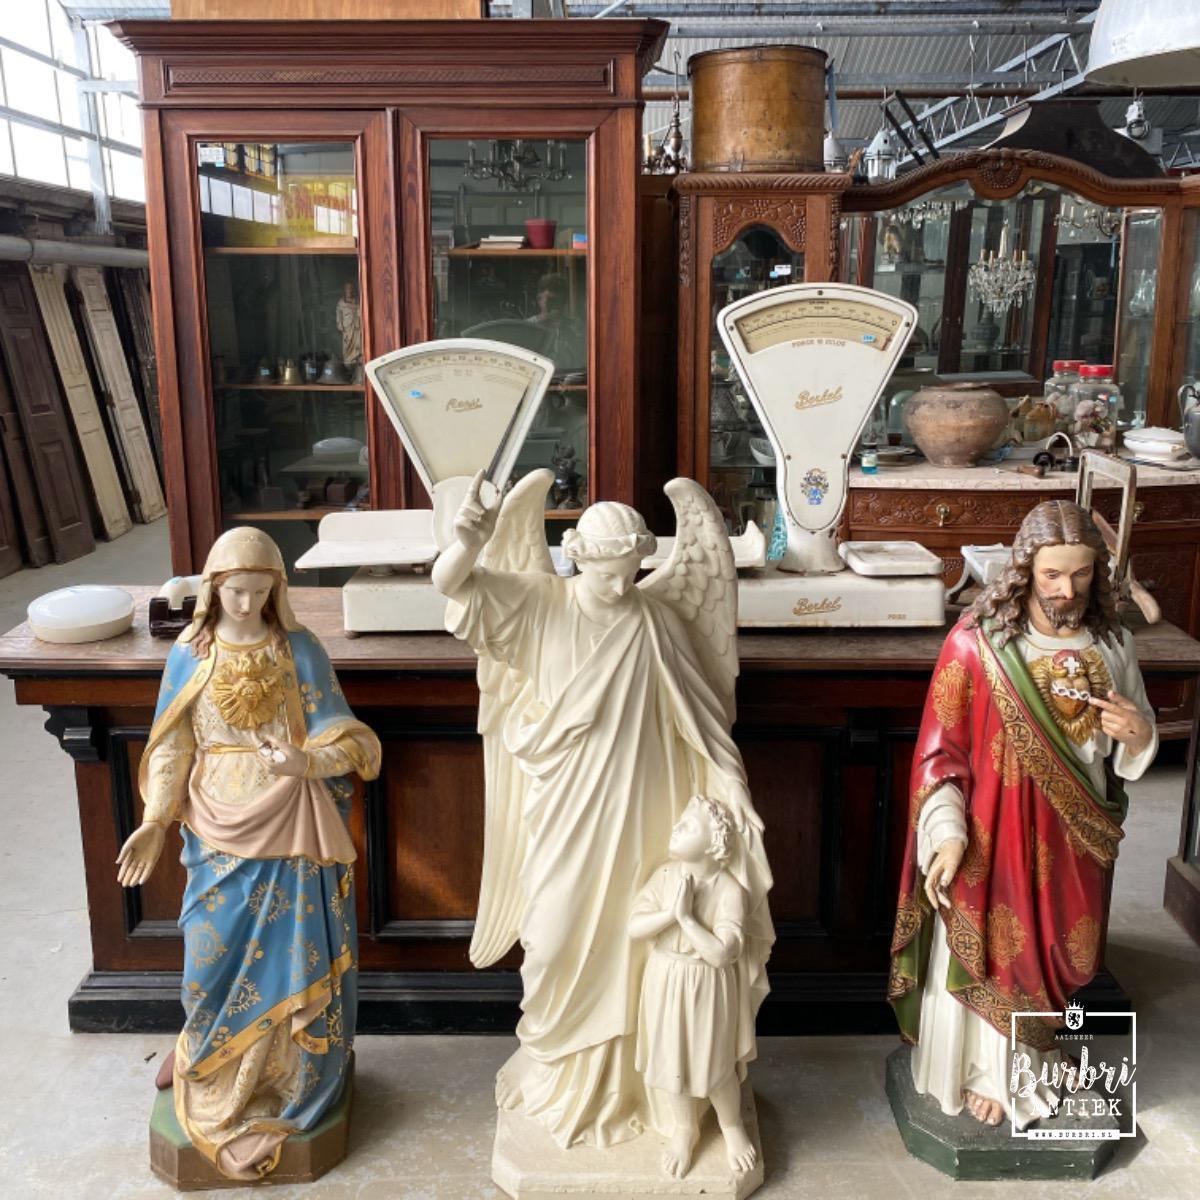 Wiens Tussen Dood in de wereld Antique church statues - Antieke winkel decoratie's - Winkelinrichtingen -  Burbri